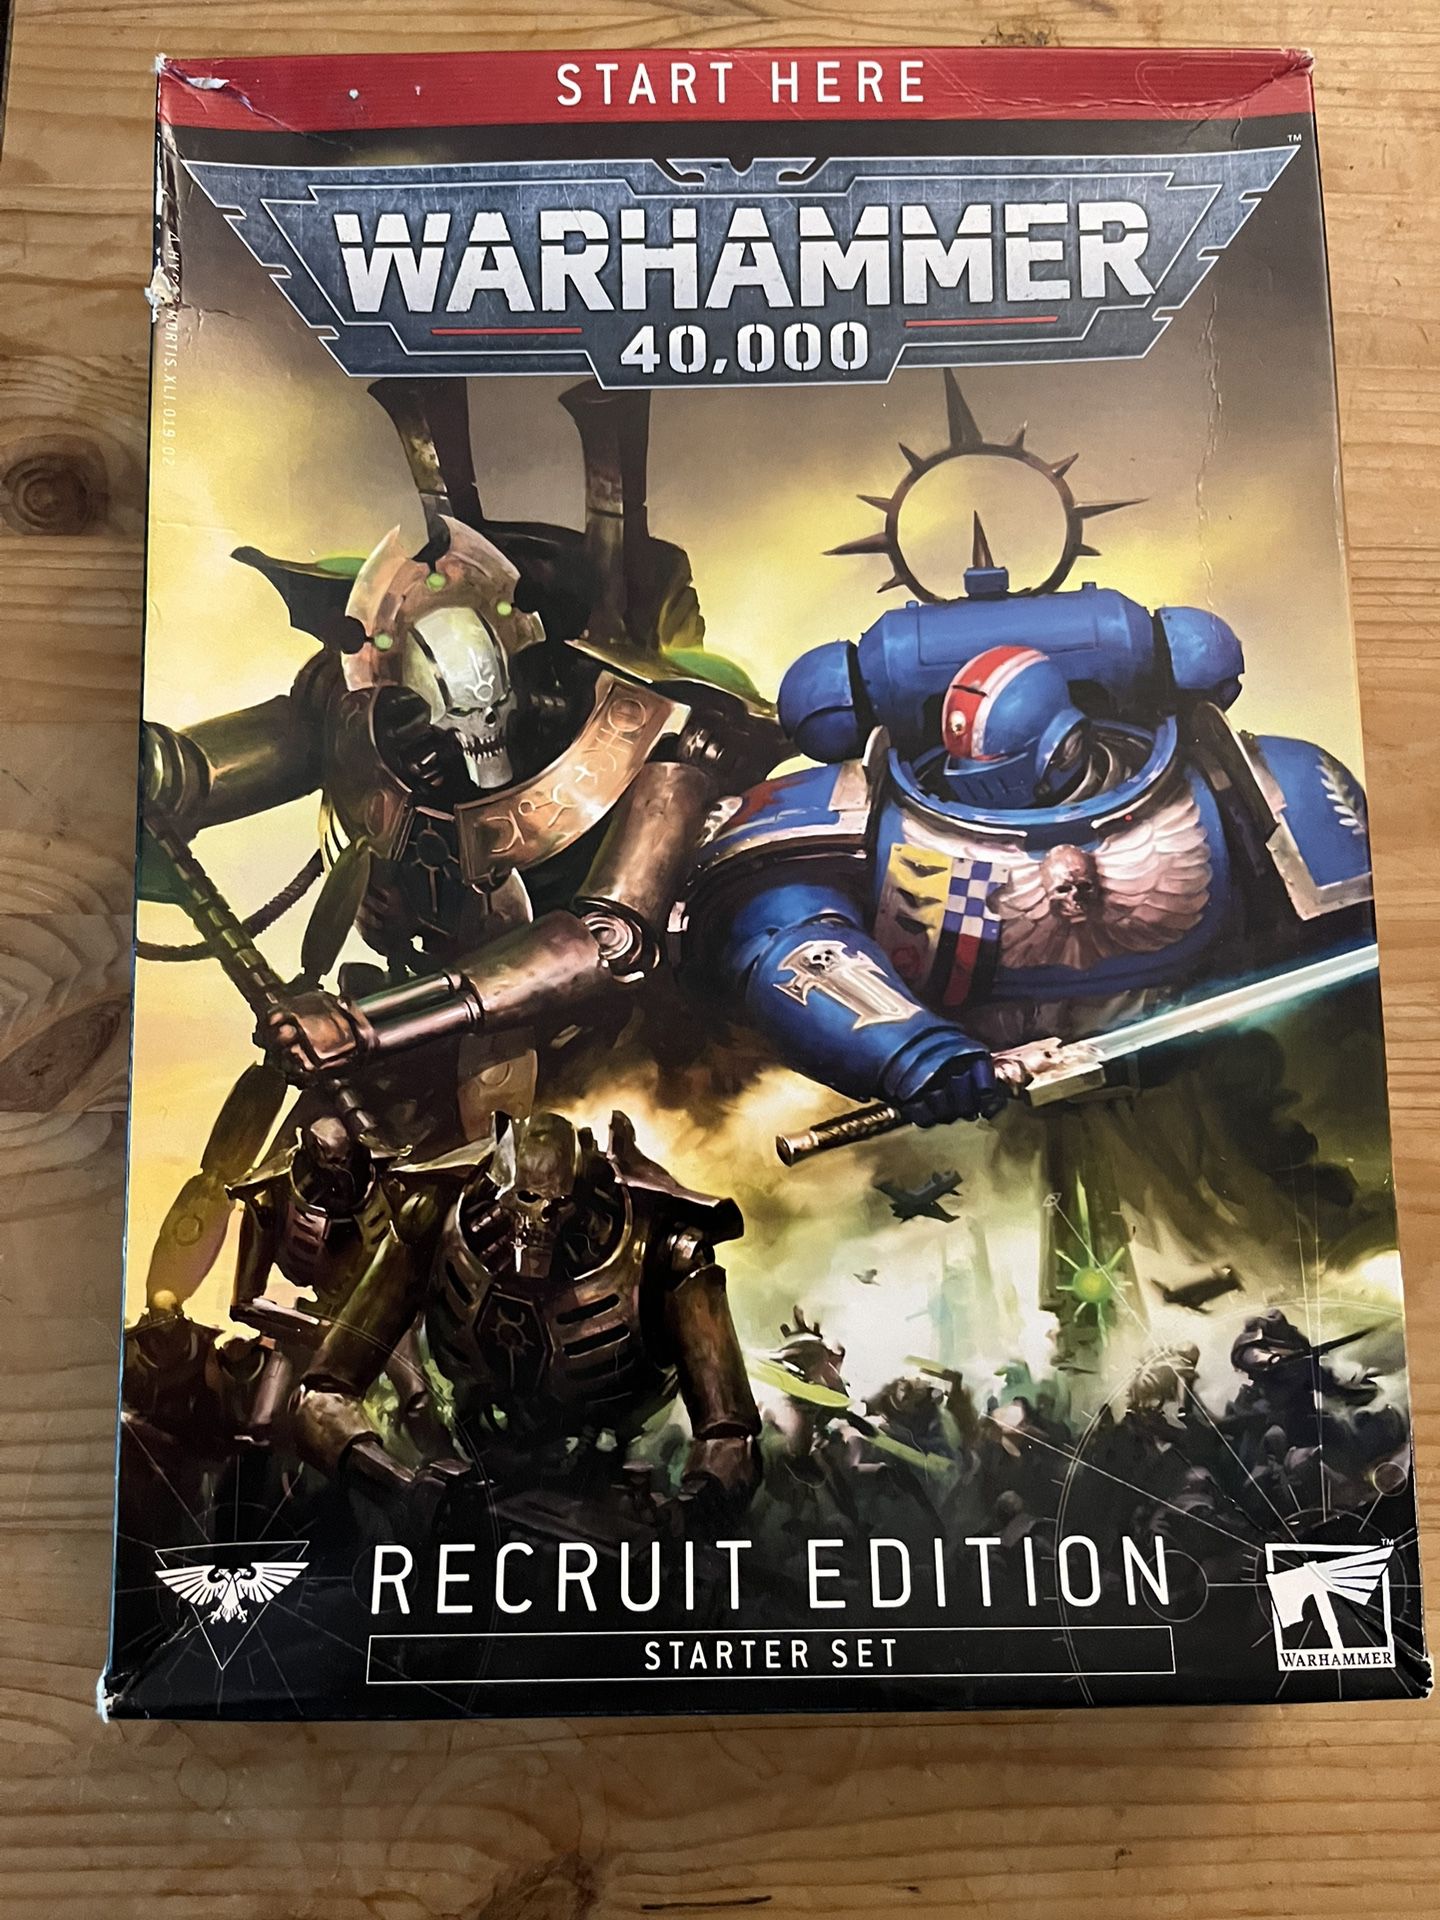 Warhammer 40k: Recruit Edition